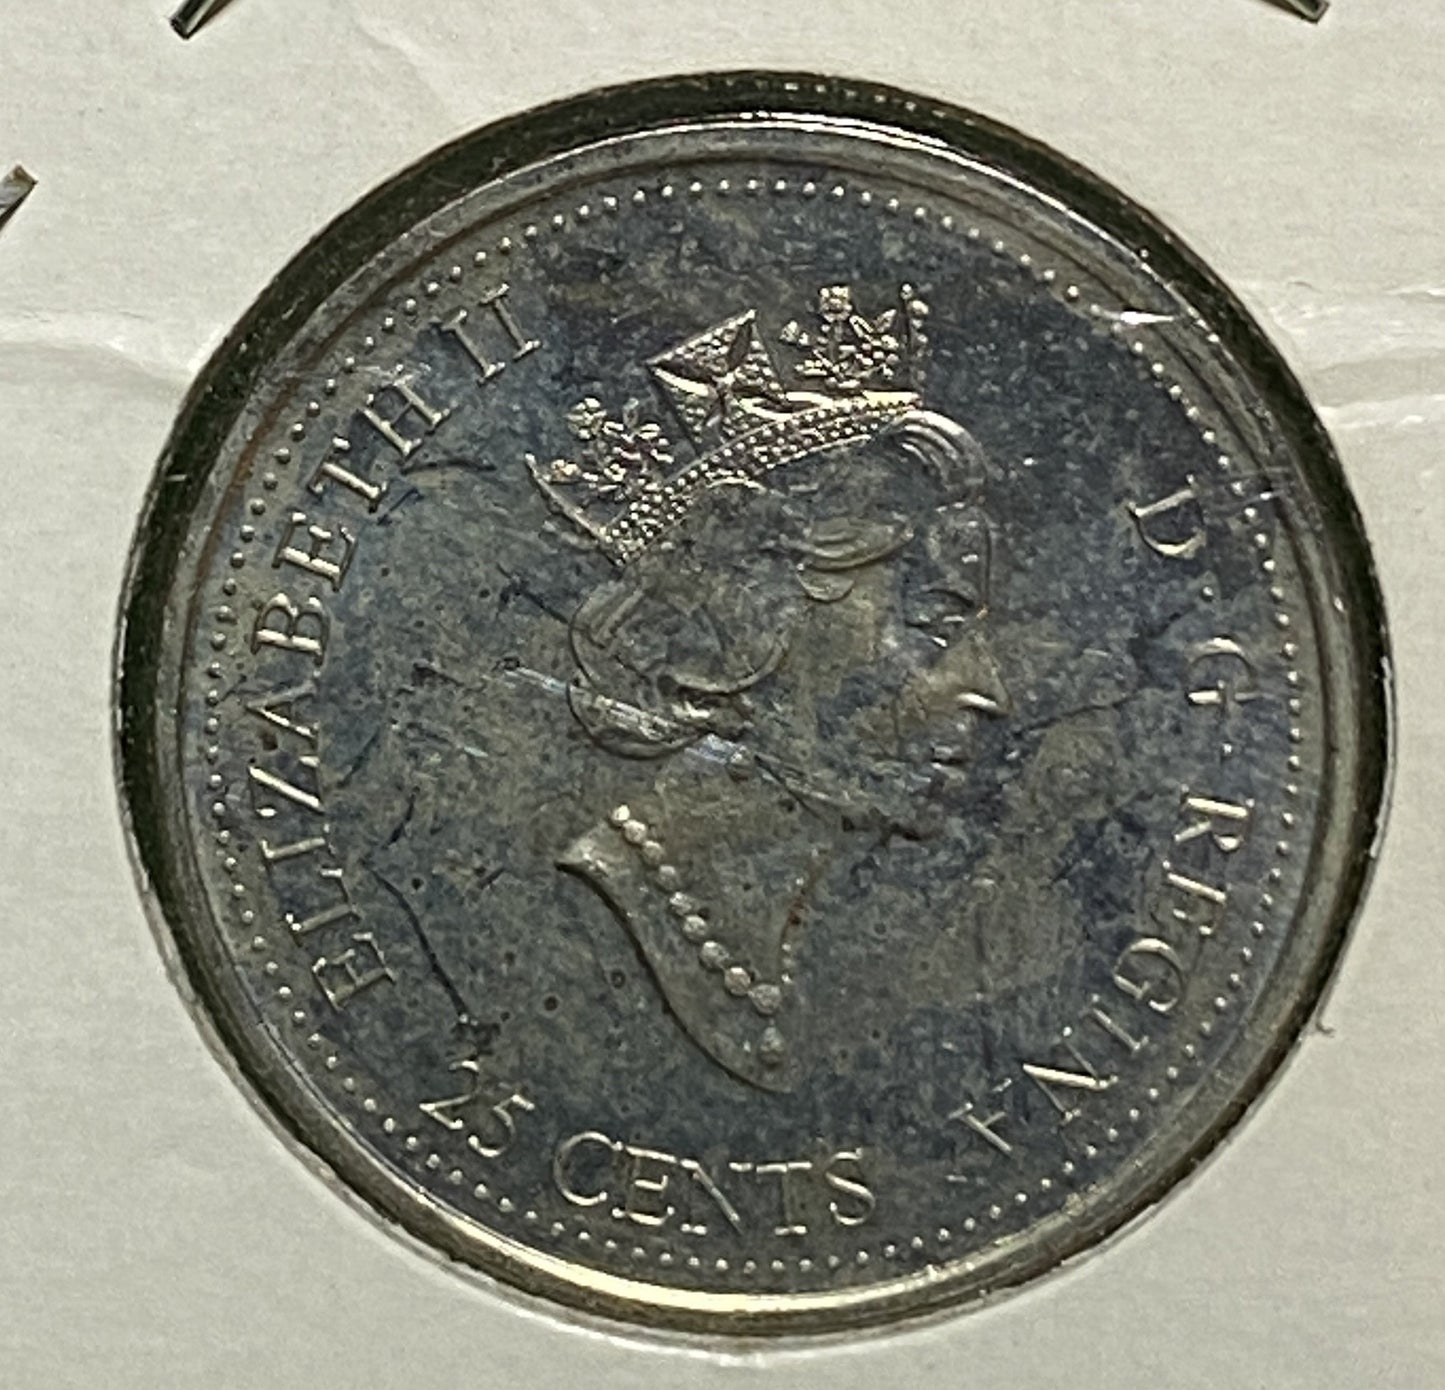 CANADIAN 1999 MILLENNIUM APRIL Queen Elizabeth II  25 CENTS QUARTER COIN AU / UNC CONDITION